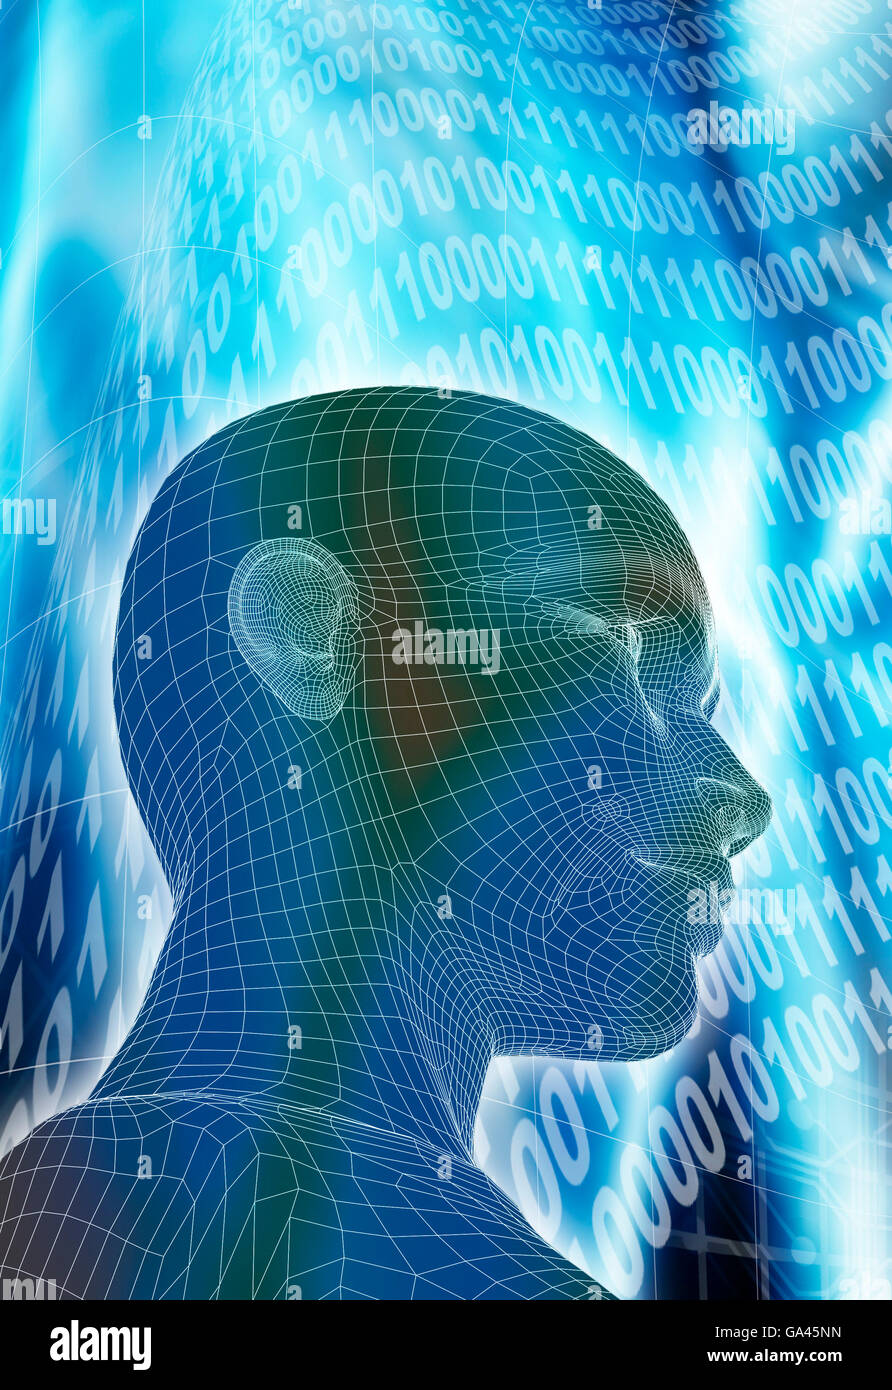 Humanoïde femelle en wireframe contre un abstract futuristic background, l'intelligence artificielle et la singularité technologique concept Banque D'Images